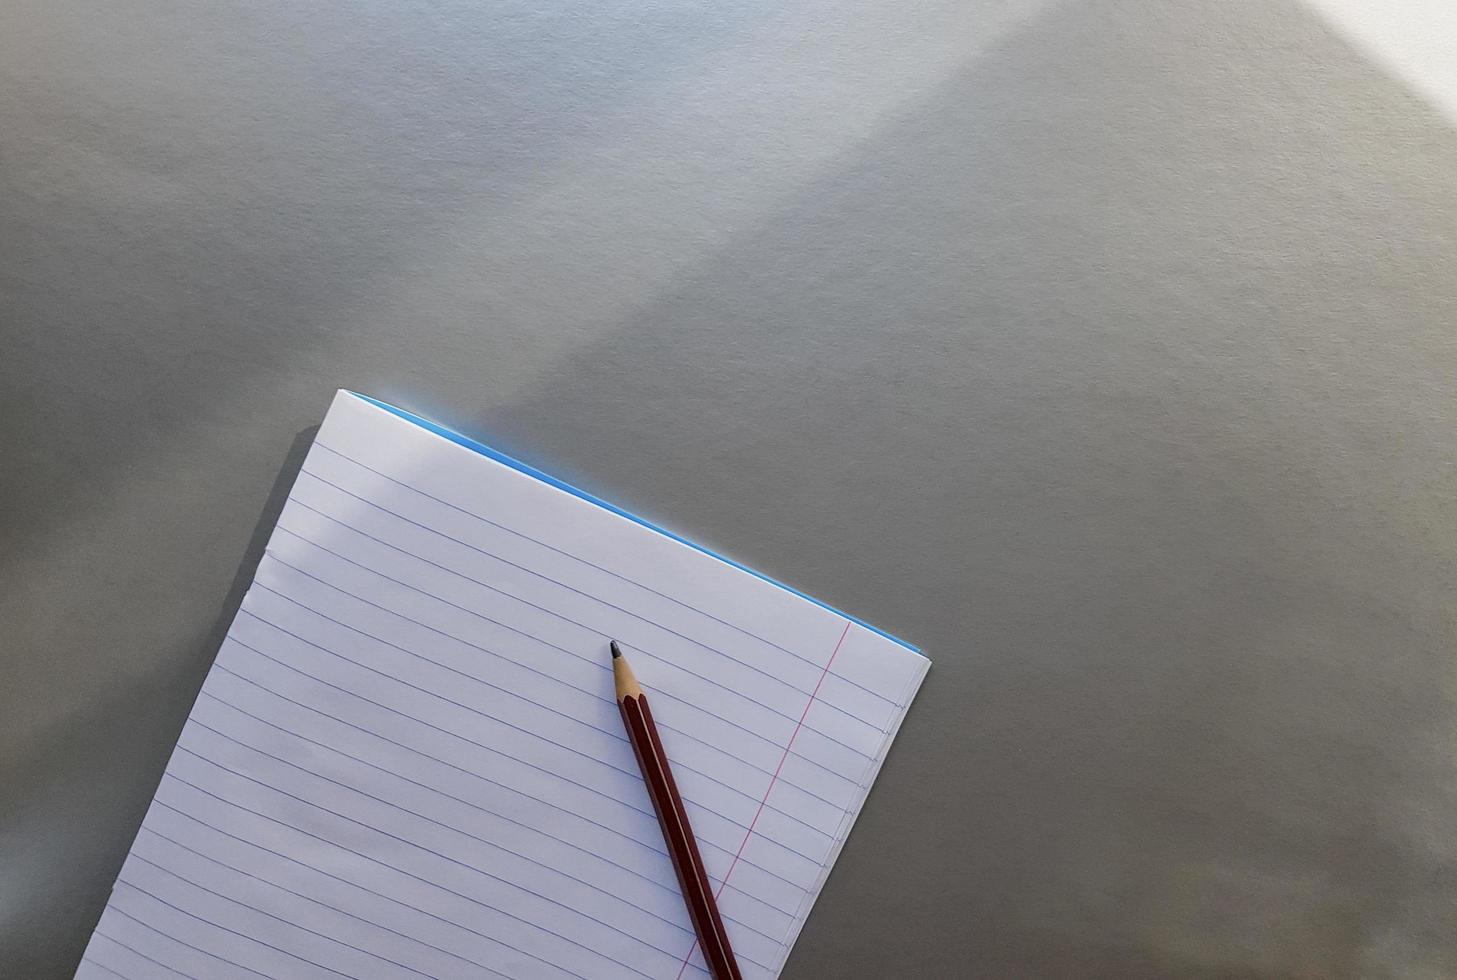 öppen skola anteckningsbok med penna på ett grått skrivbord med solstrålar från fönstret. ett tomt, vitt ark med anteckningsbok för att skriva. utbildning koncept. kopieringsutrymme. utsikt från ovan. platt låg foto